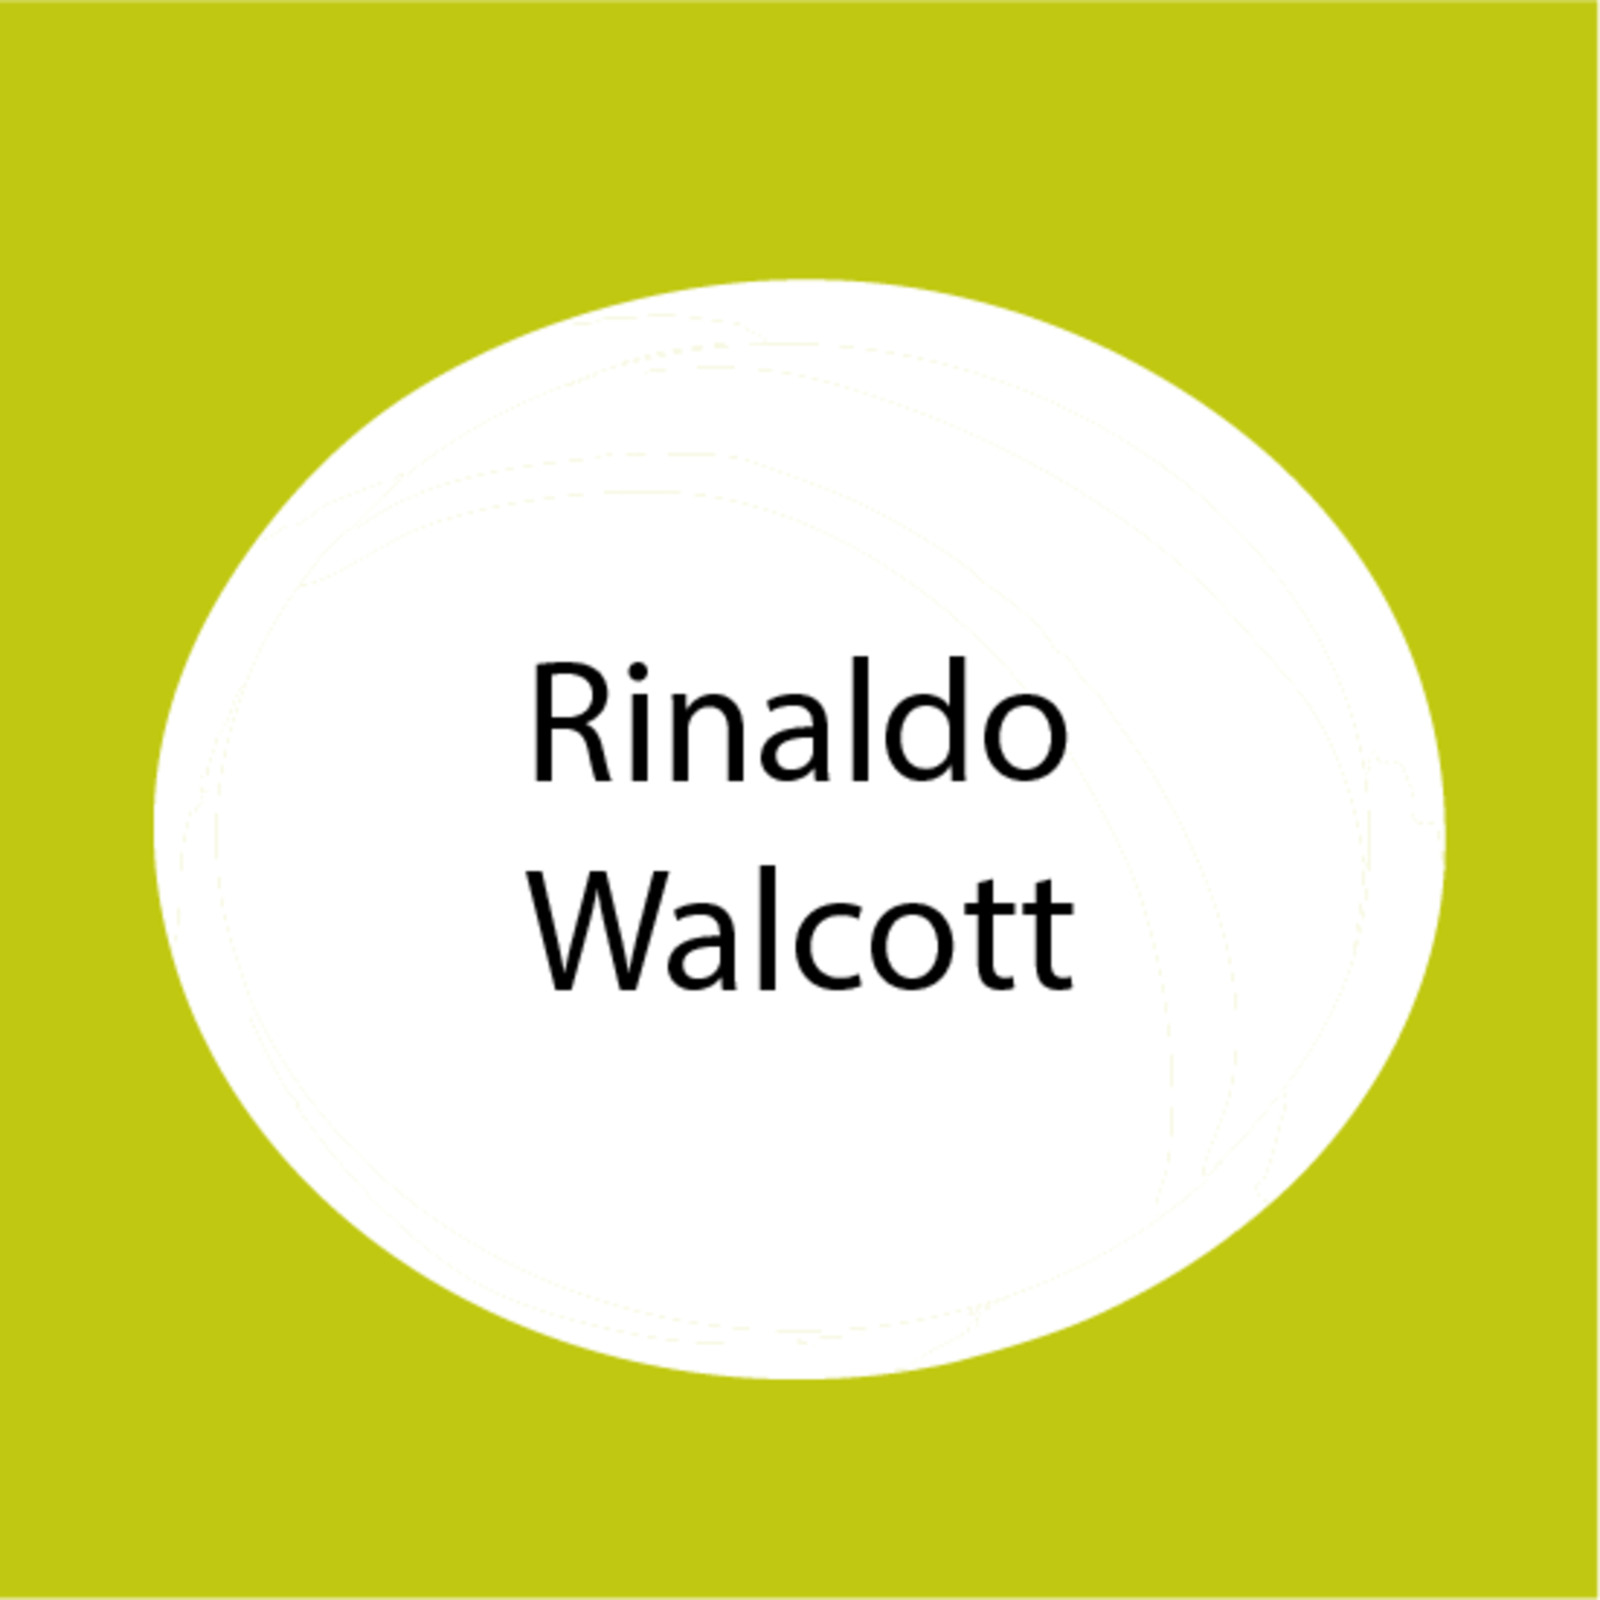 Rinaldo Walcott